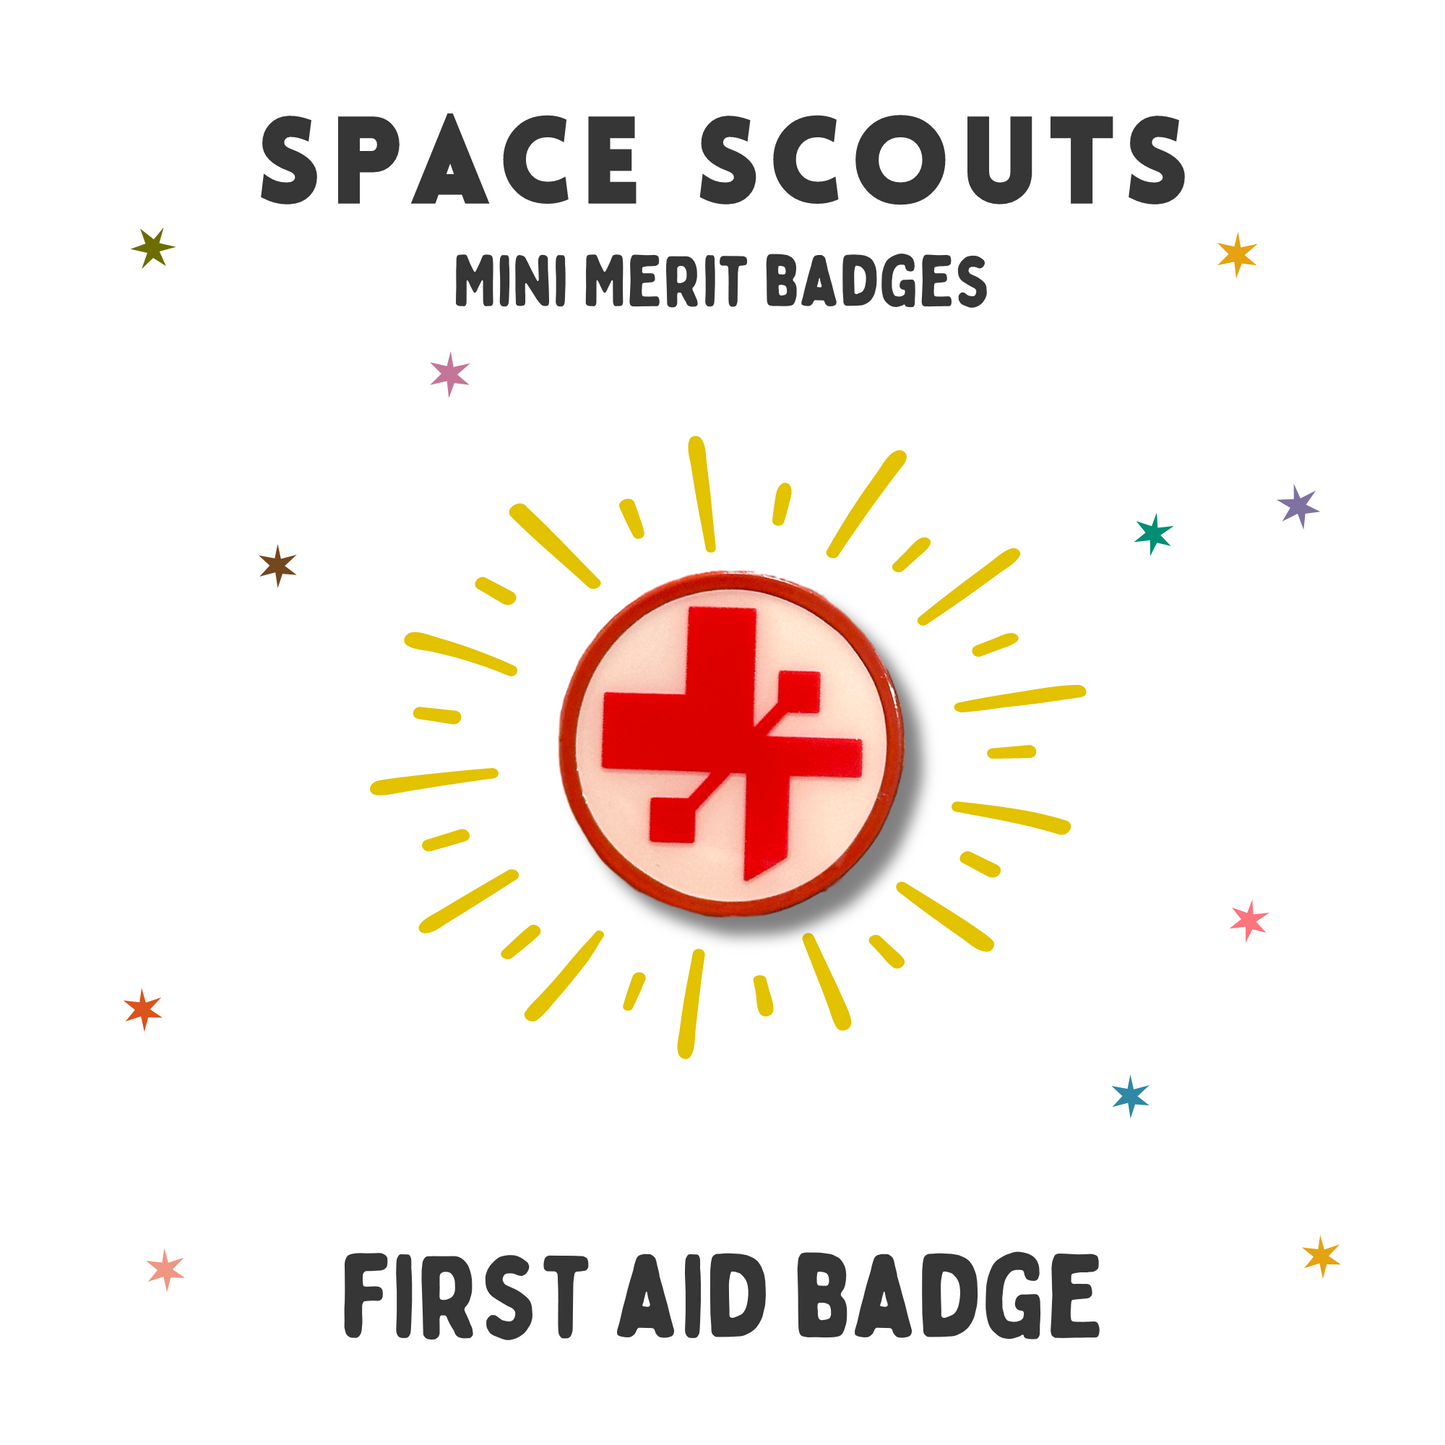 SPACE SCOUTS Mini Merit badges - # 1